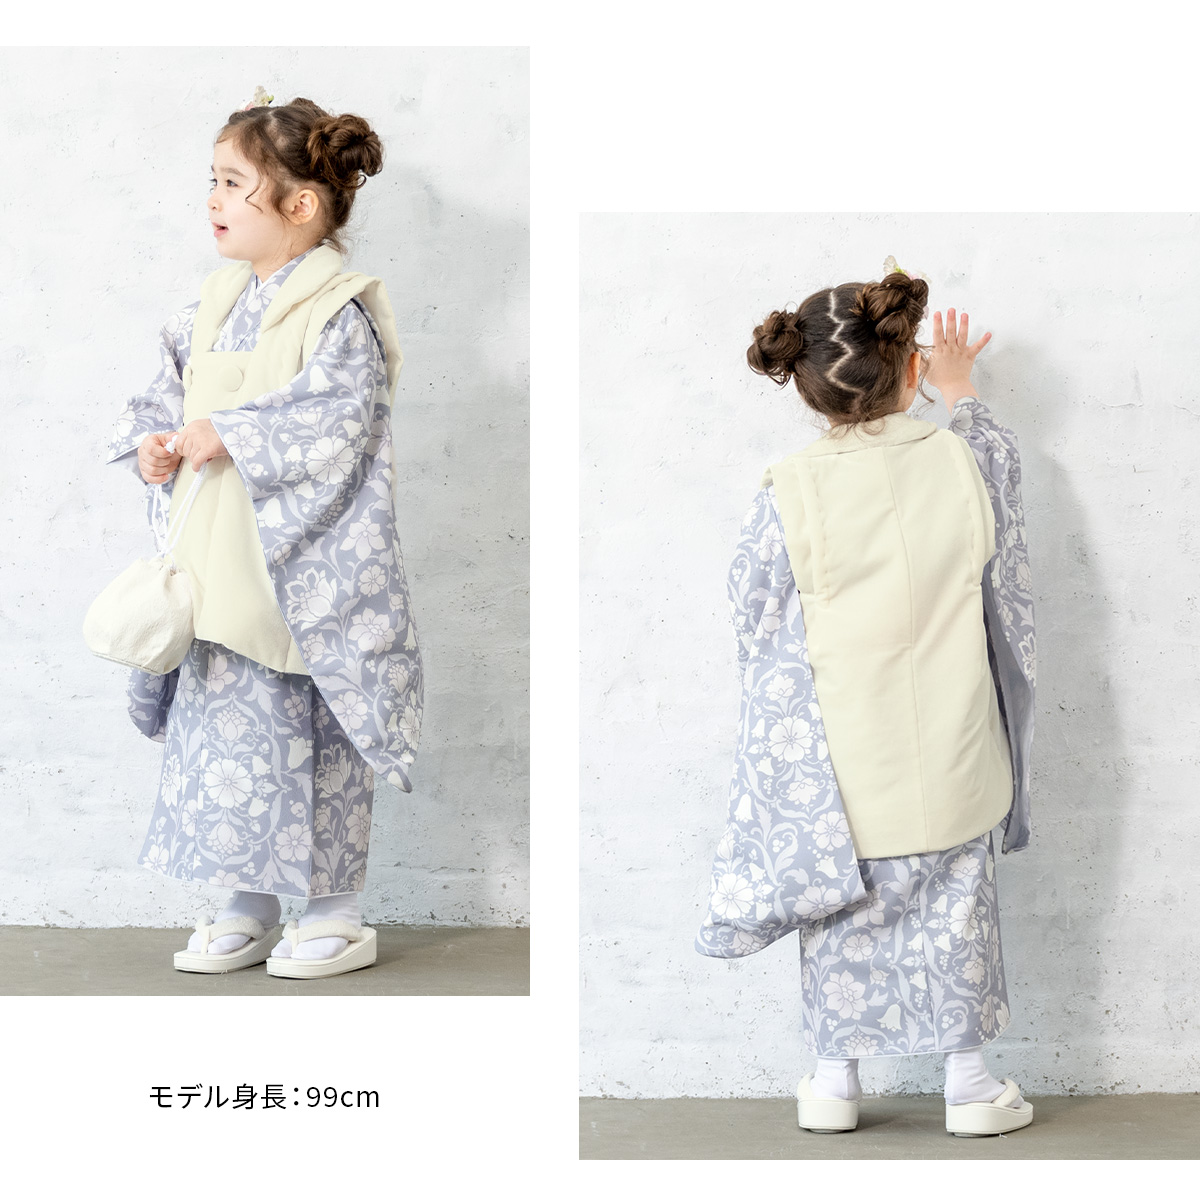 七五三 着物 3歳 販売 女の子 三歳 着物セット 被布セット 白 薄紫系 